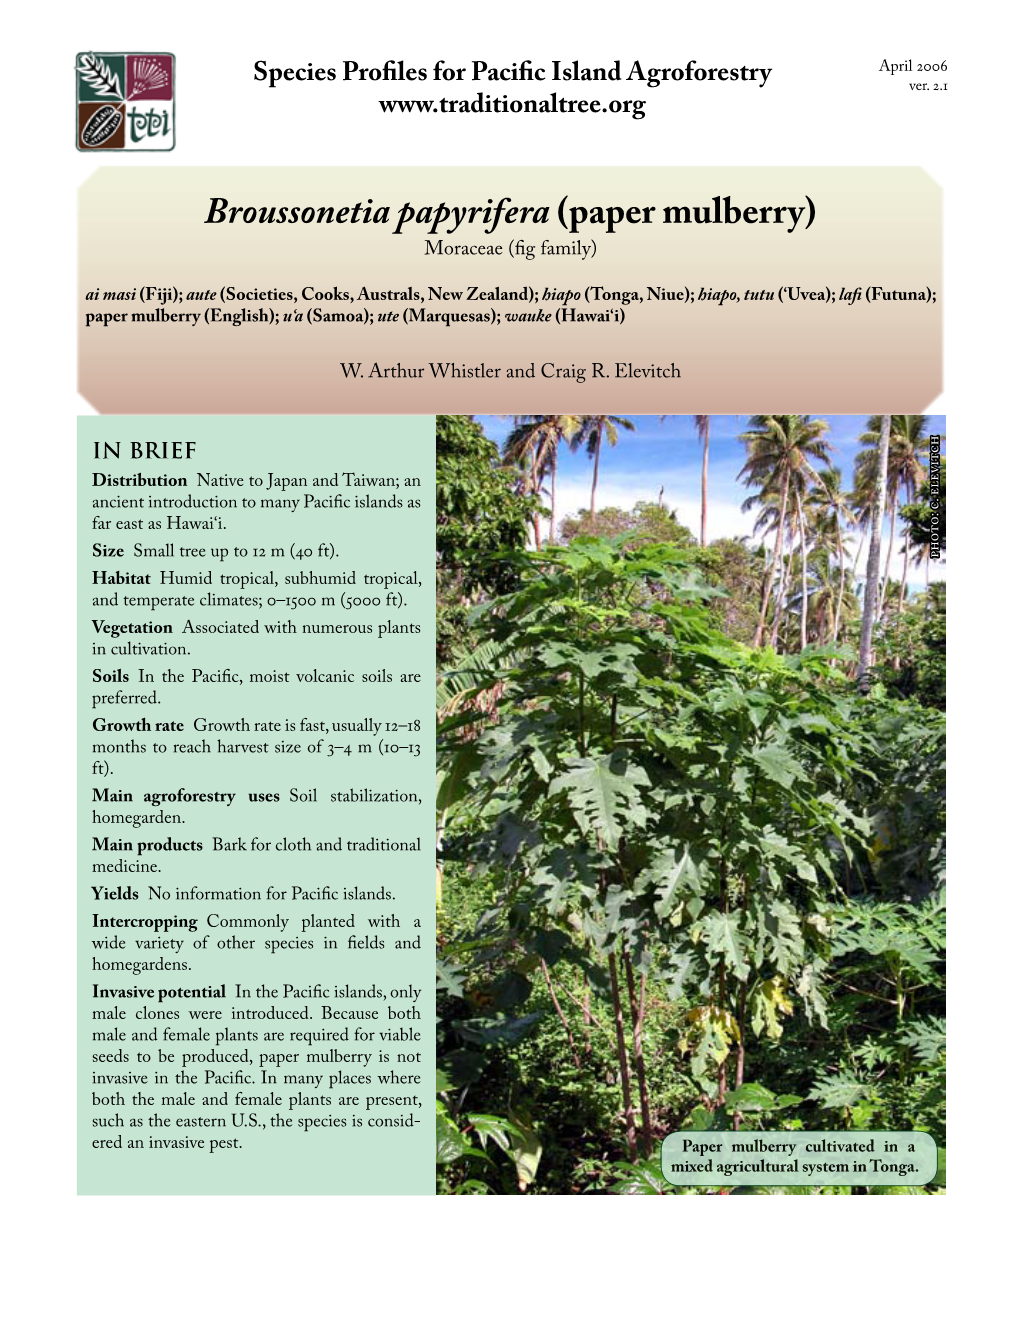 Broussonetia Papyrifera (Paper Mulberry)